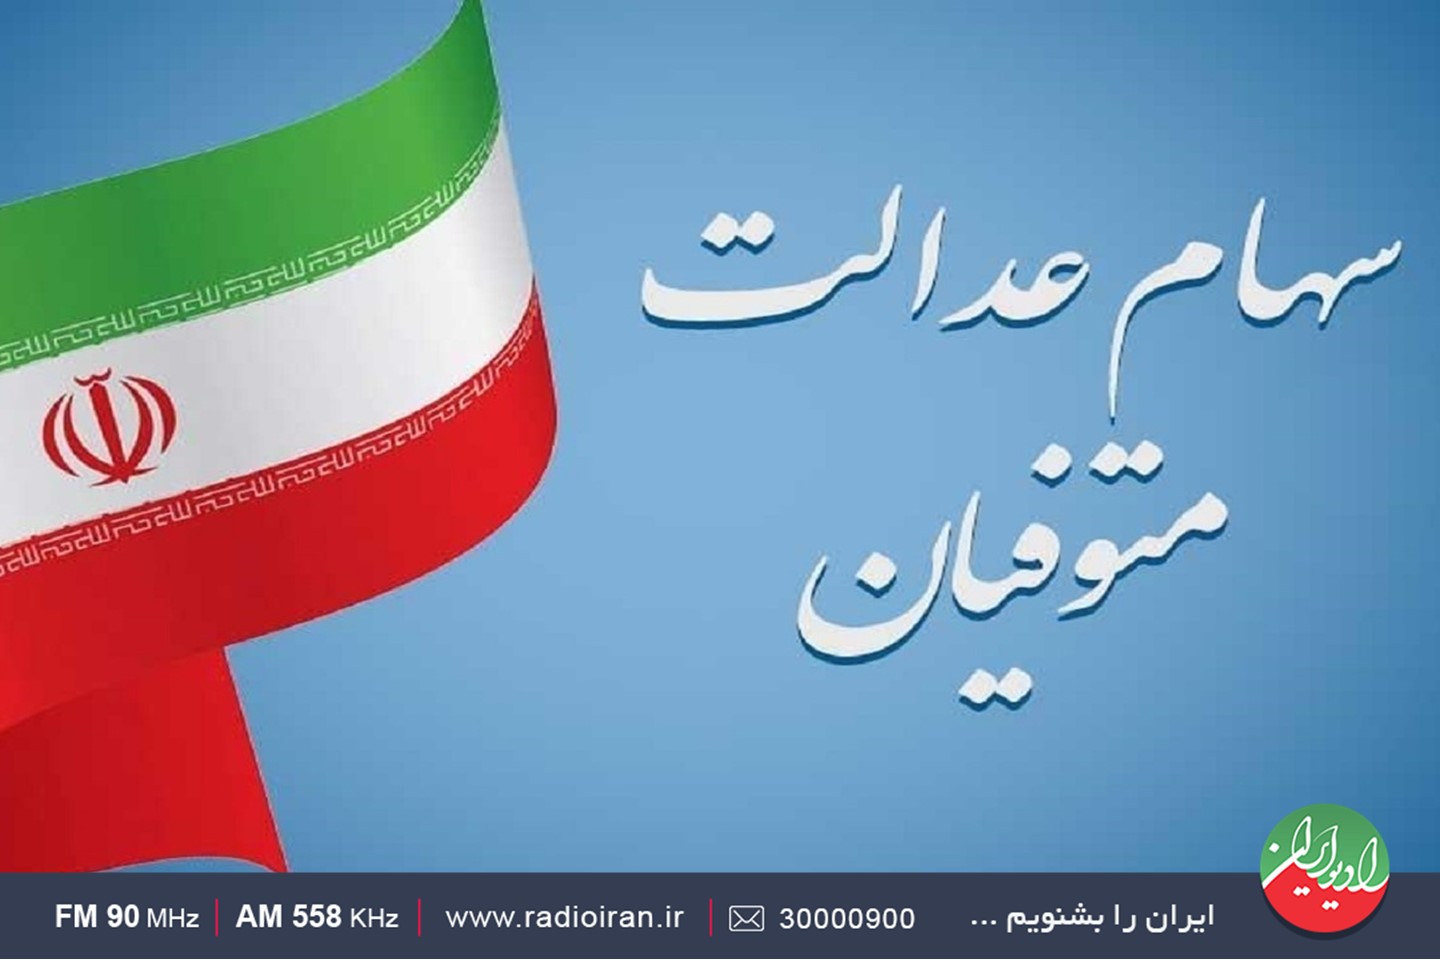 جزئیات انتقال سهام عدالت متوفیان به وراث در رادیو ایران